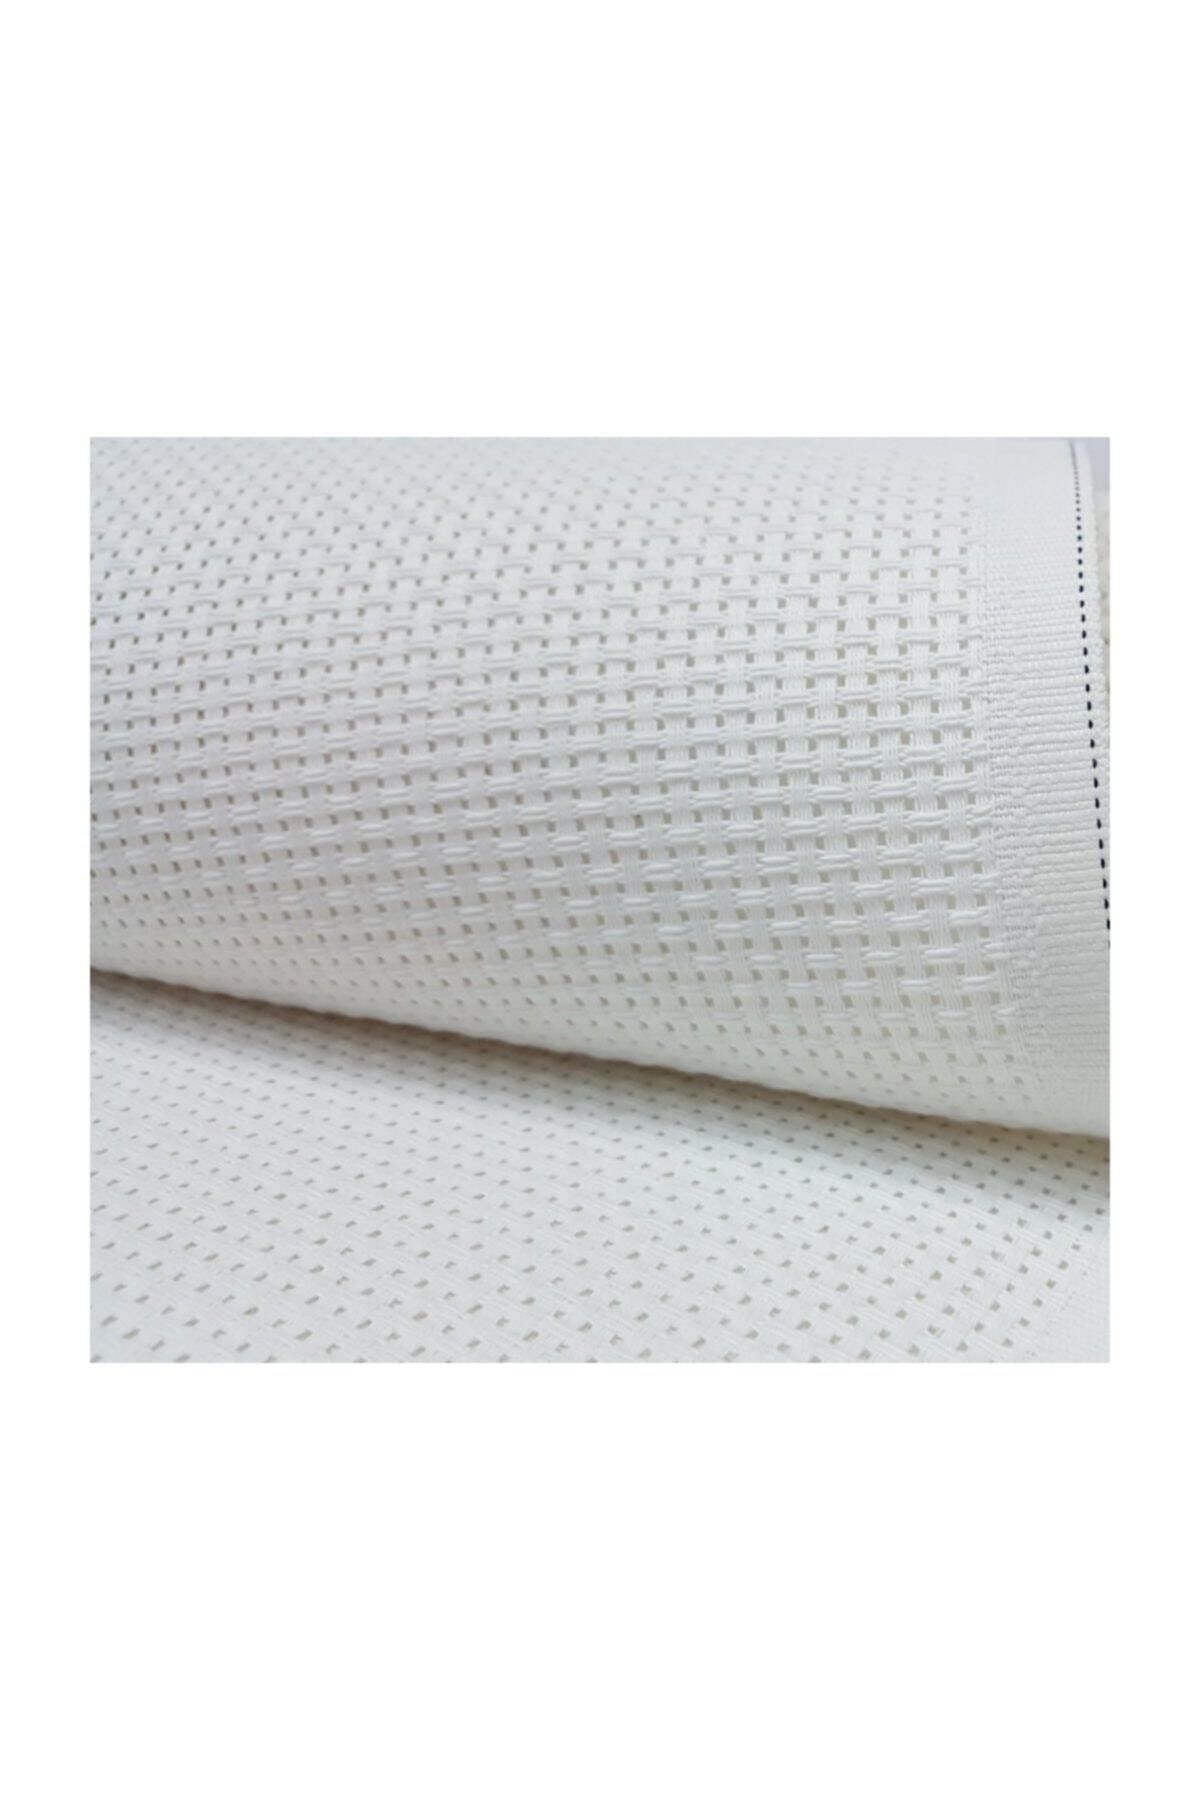 METİNLER EV TEKSİLİ Etamin Seccade Kumaşı Beyaz 75x125 Cm